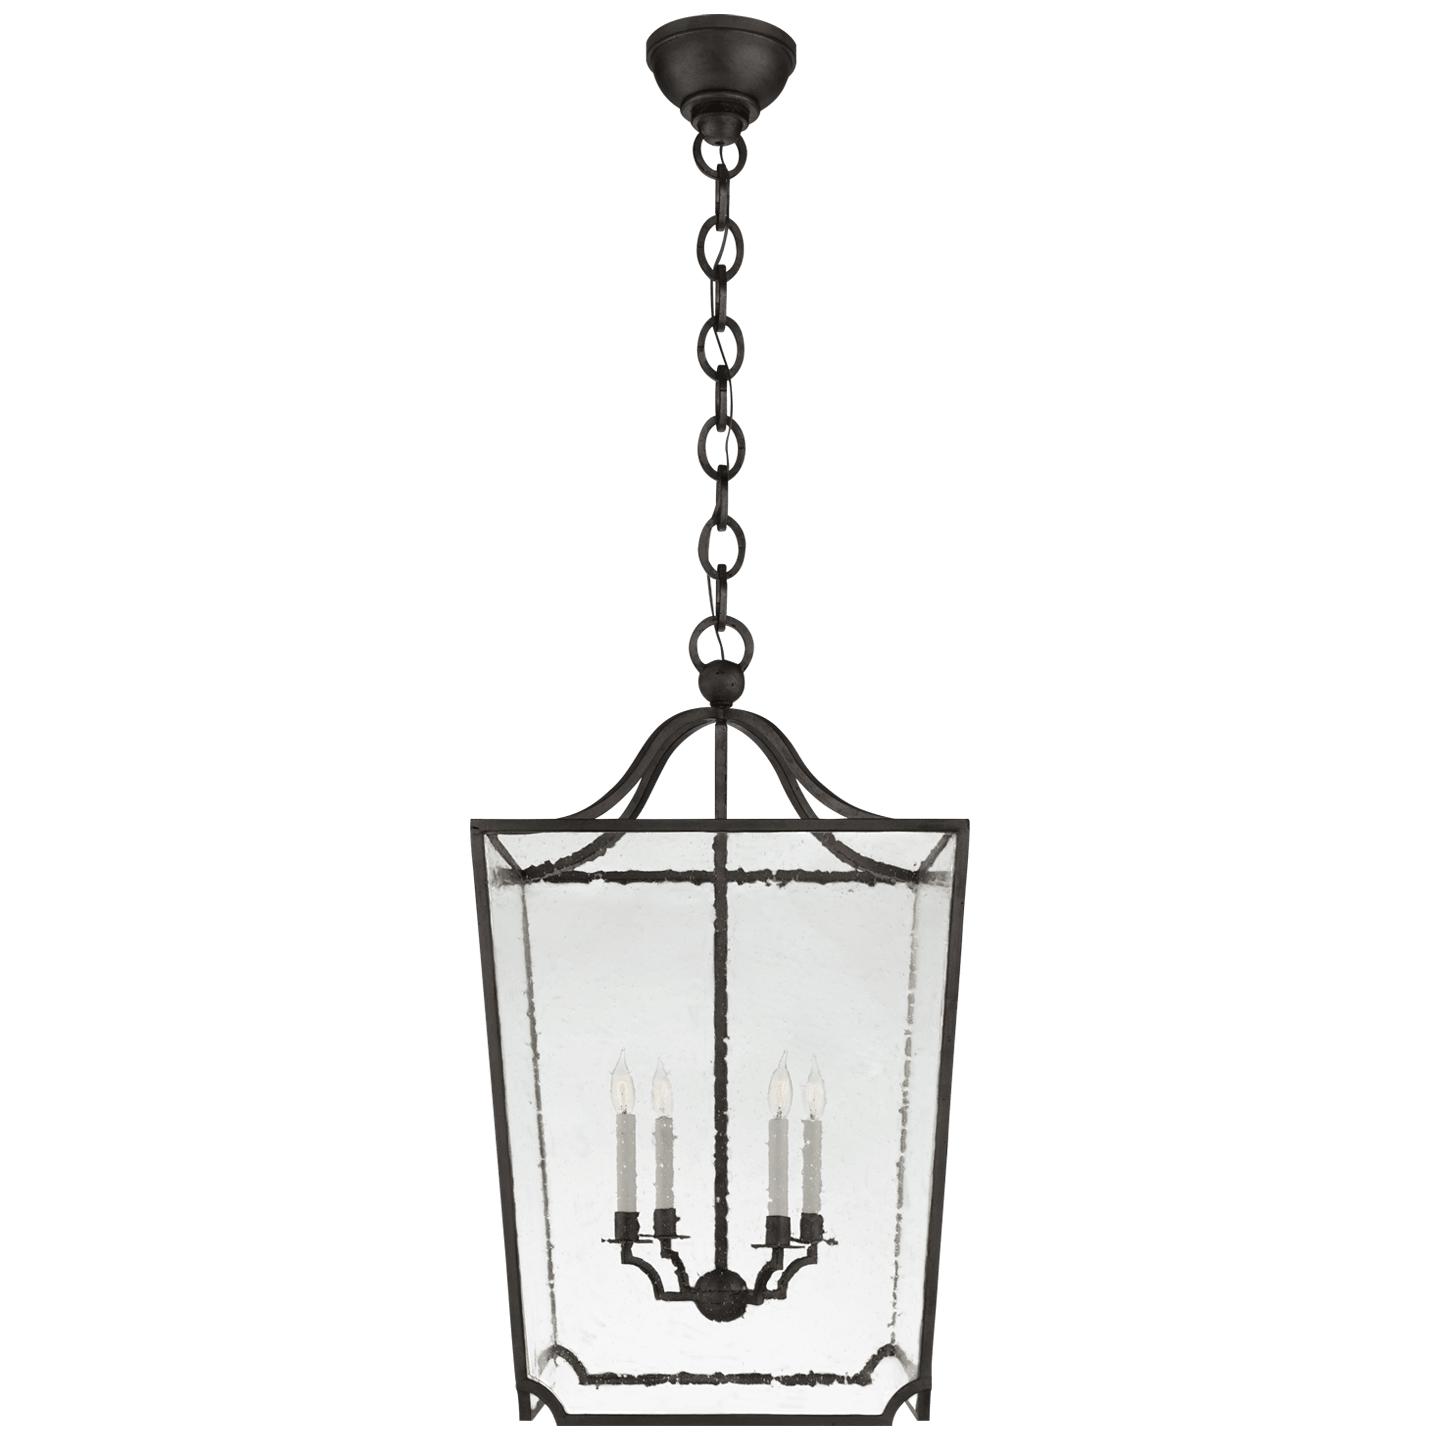 Купить Подвесной светильник Beatrice Large Lantern в интернет-магазине roooms.ru